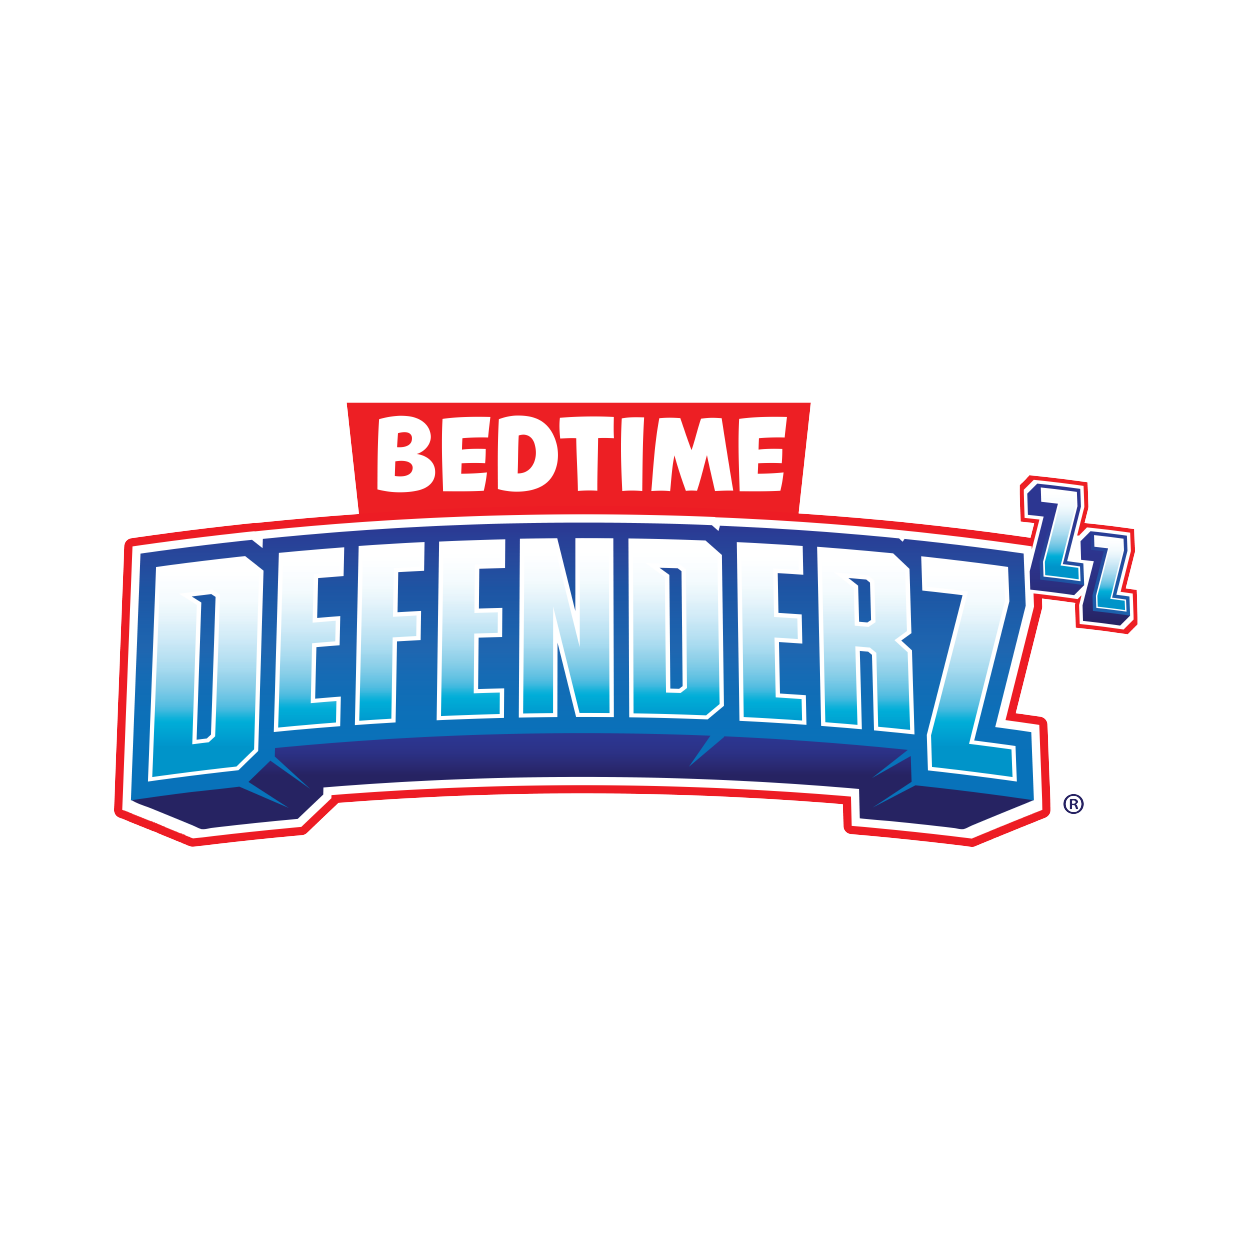 Bedtime Defenderz